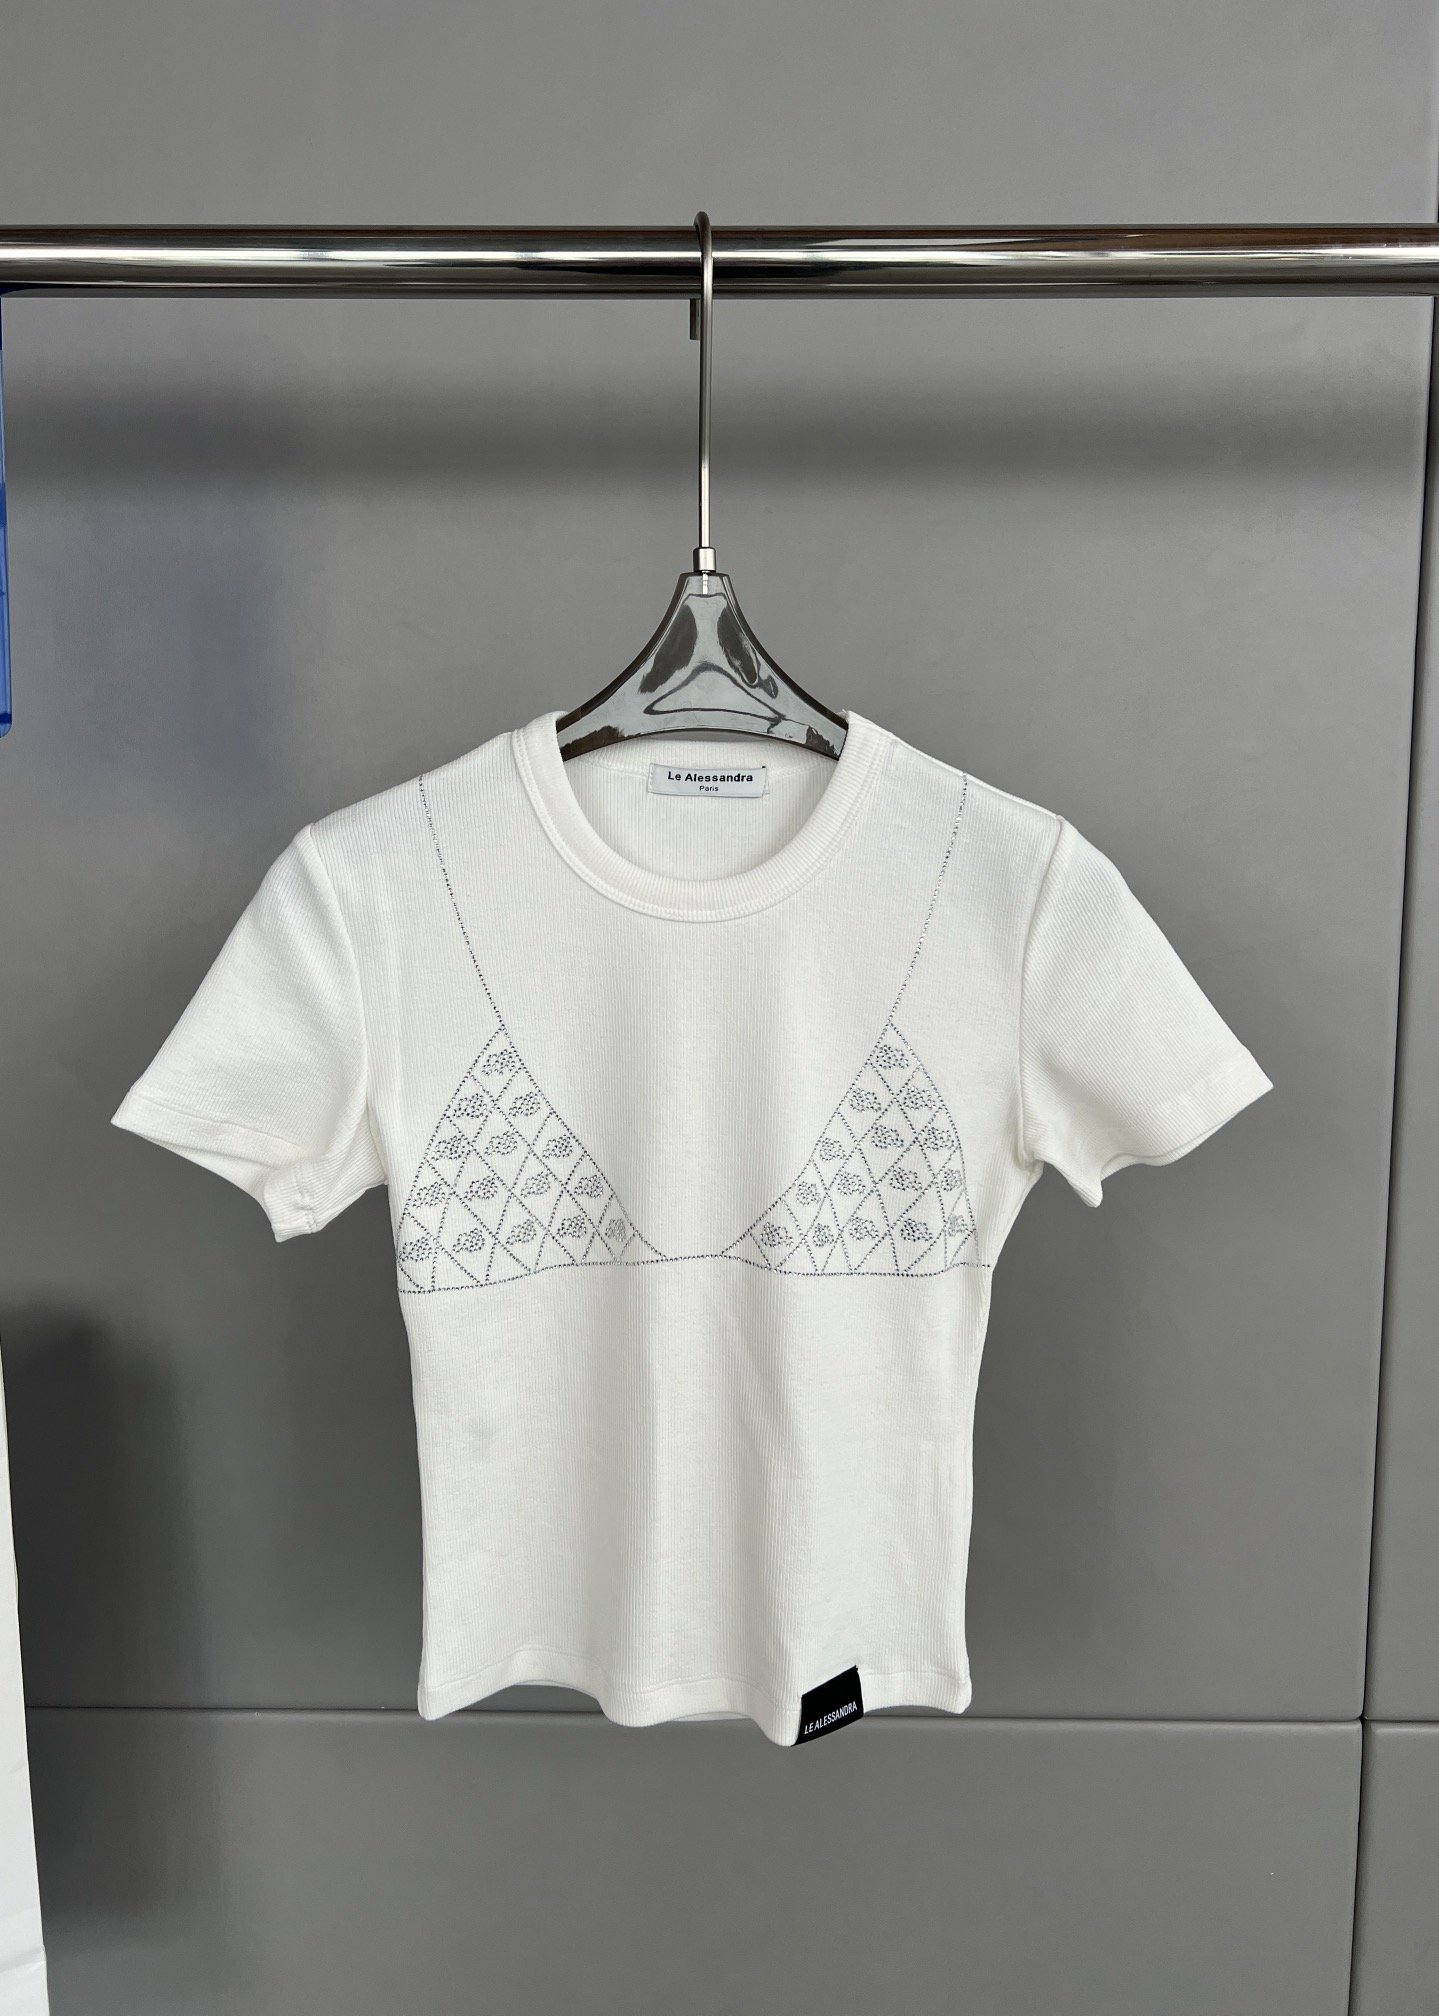 Le Alessandra 新款 水钻✨烫钻短袖T恤、面料有弹性、上身显瘦、夏季炸裂必备单品码数S  M  L